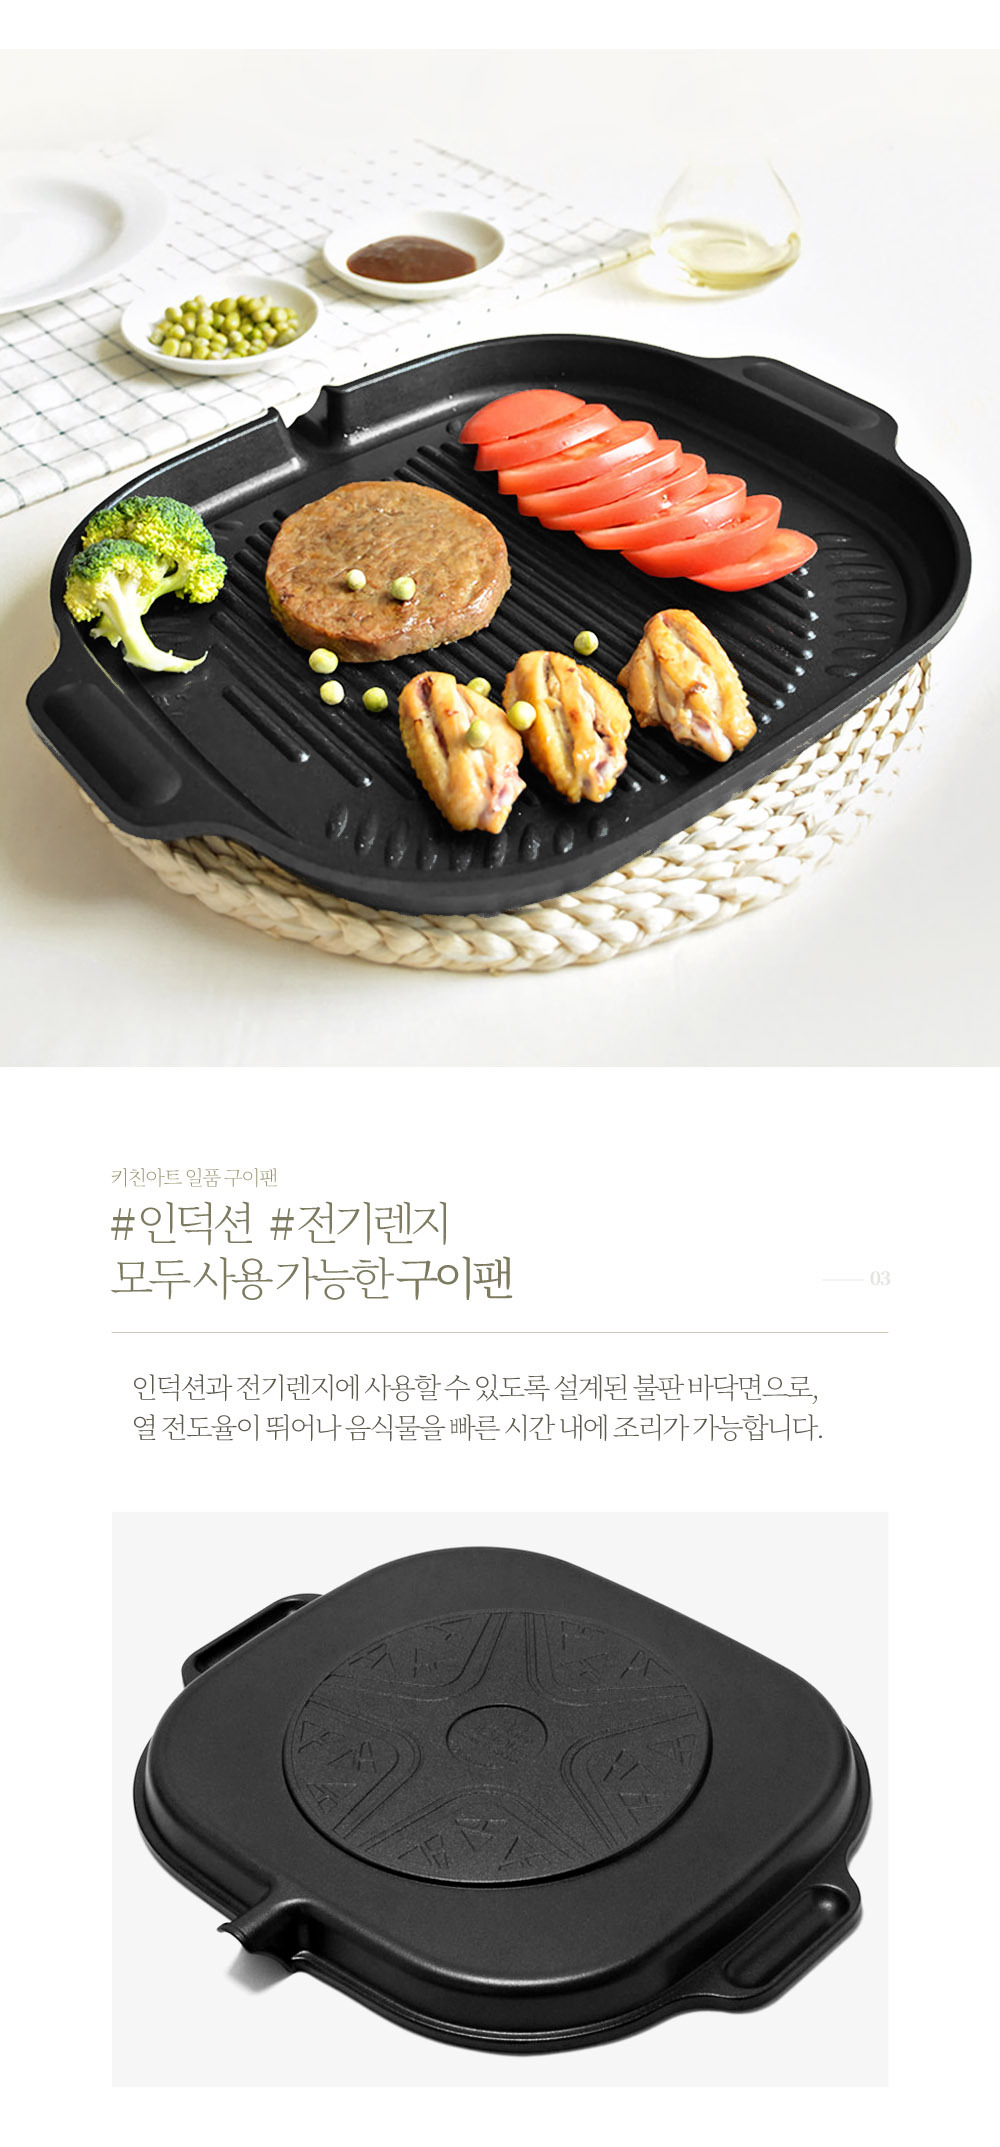 韓國食品-[키친아트] 인덕션겸용 일품 원형구이팬 고기불판 구이판 38.5x30cm